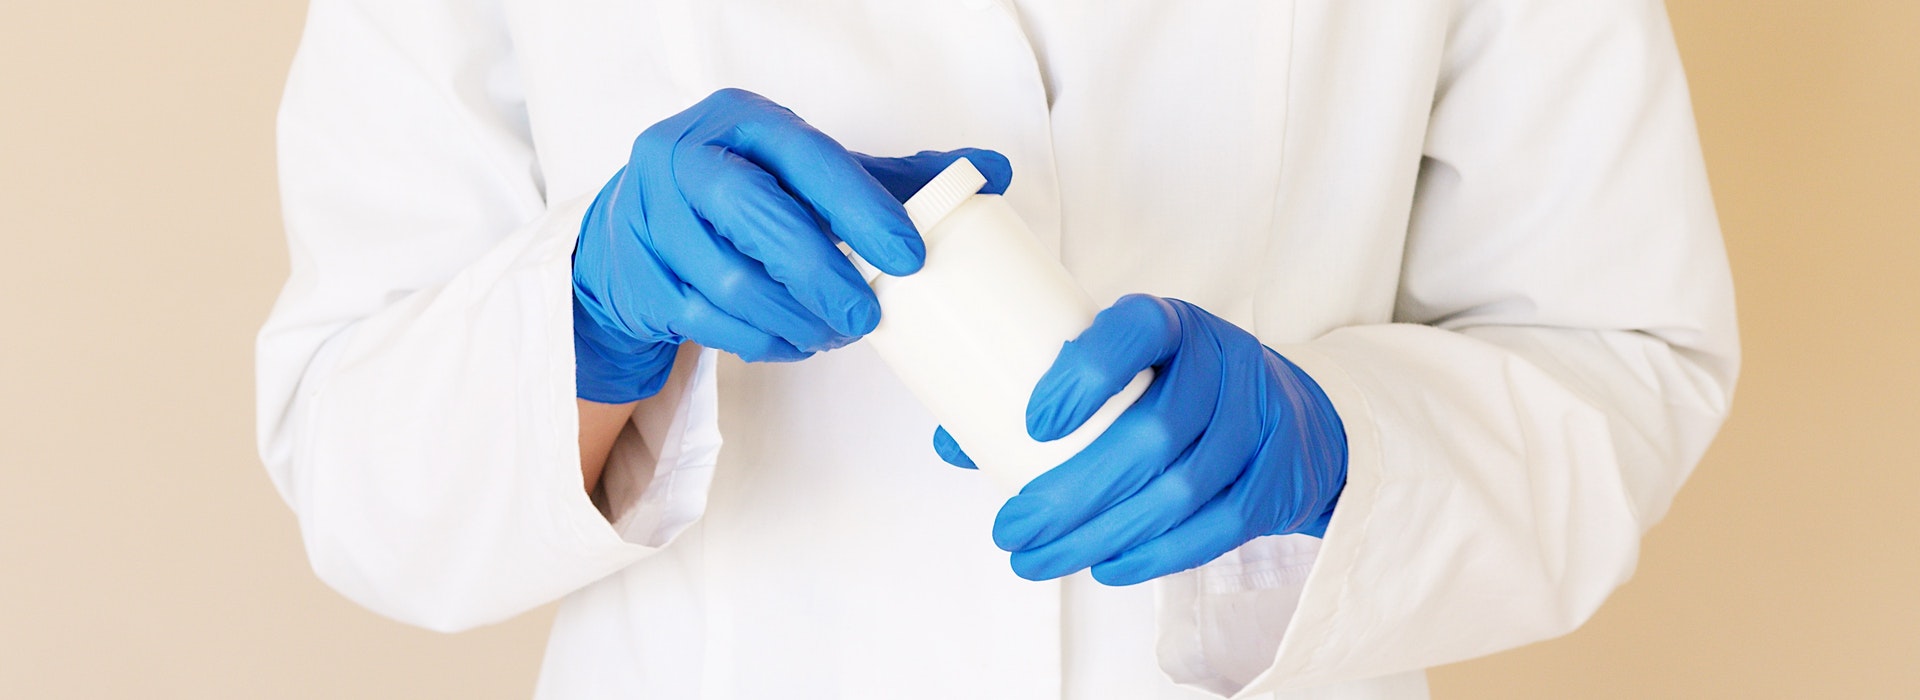 Photo d’une personne portant une blouse de laboratoire et des gants médicaux bleus qui tient une bouteille en plastique